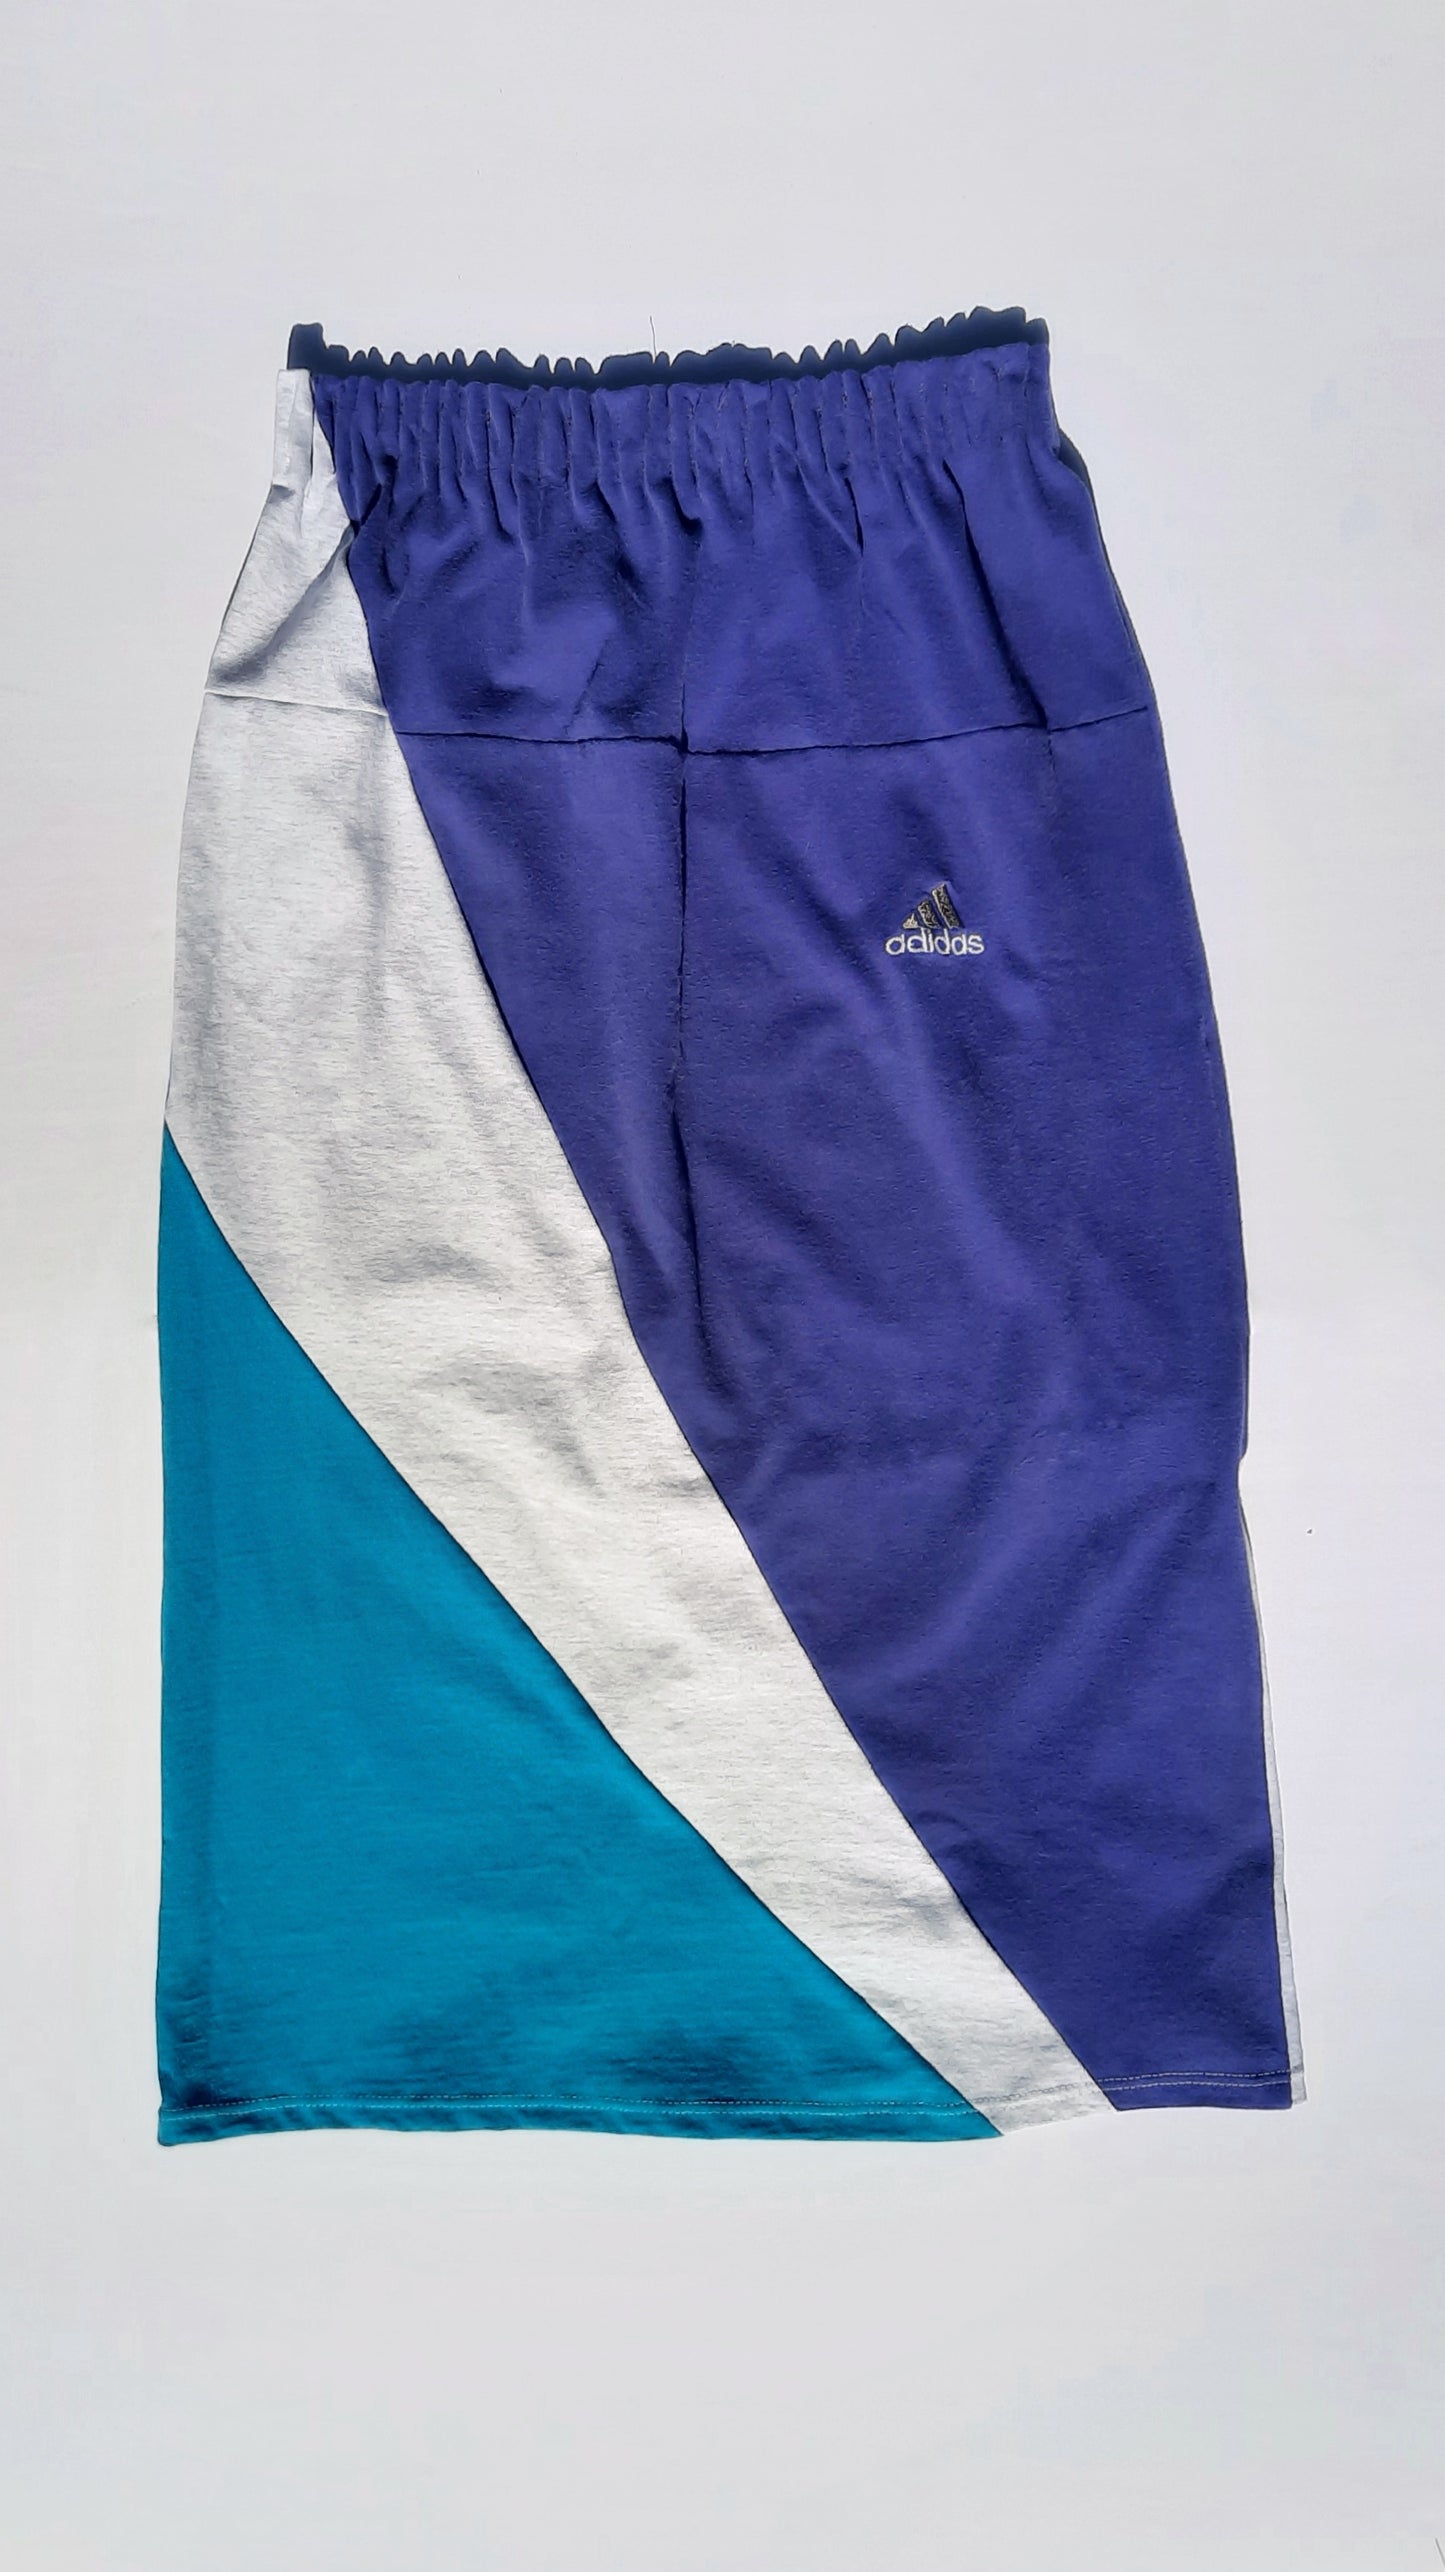 Adidaaaamn Reworked Tee-Skirt 26-34" waist